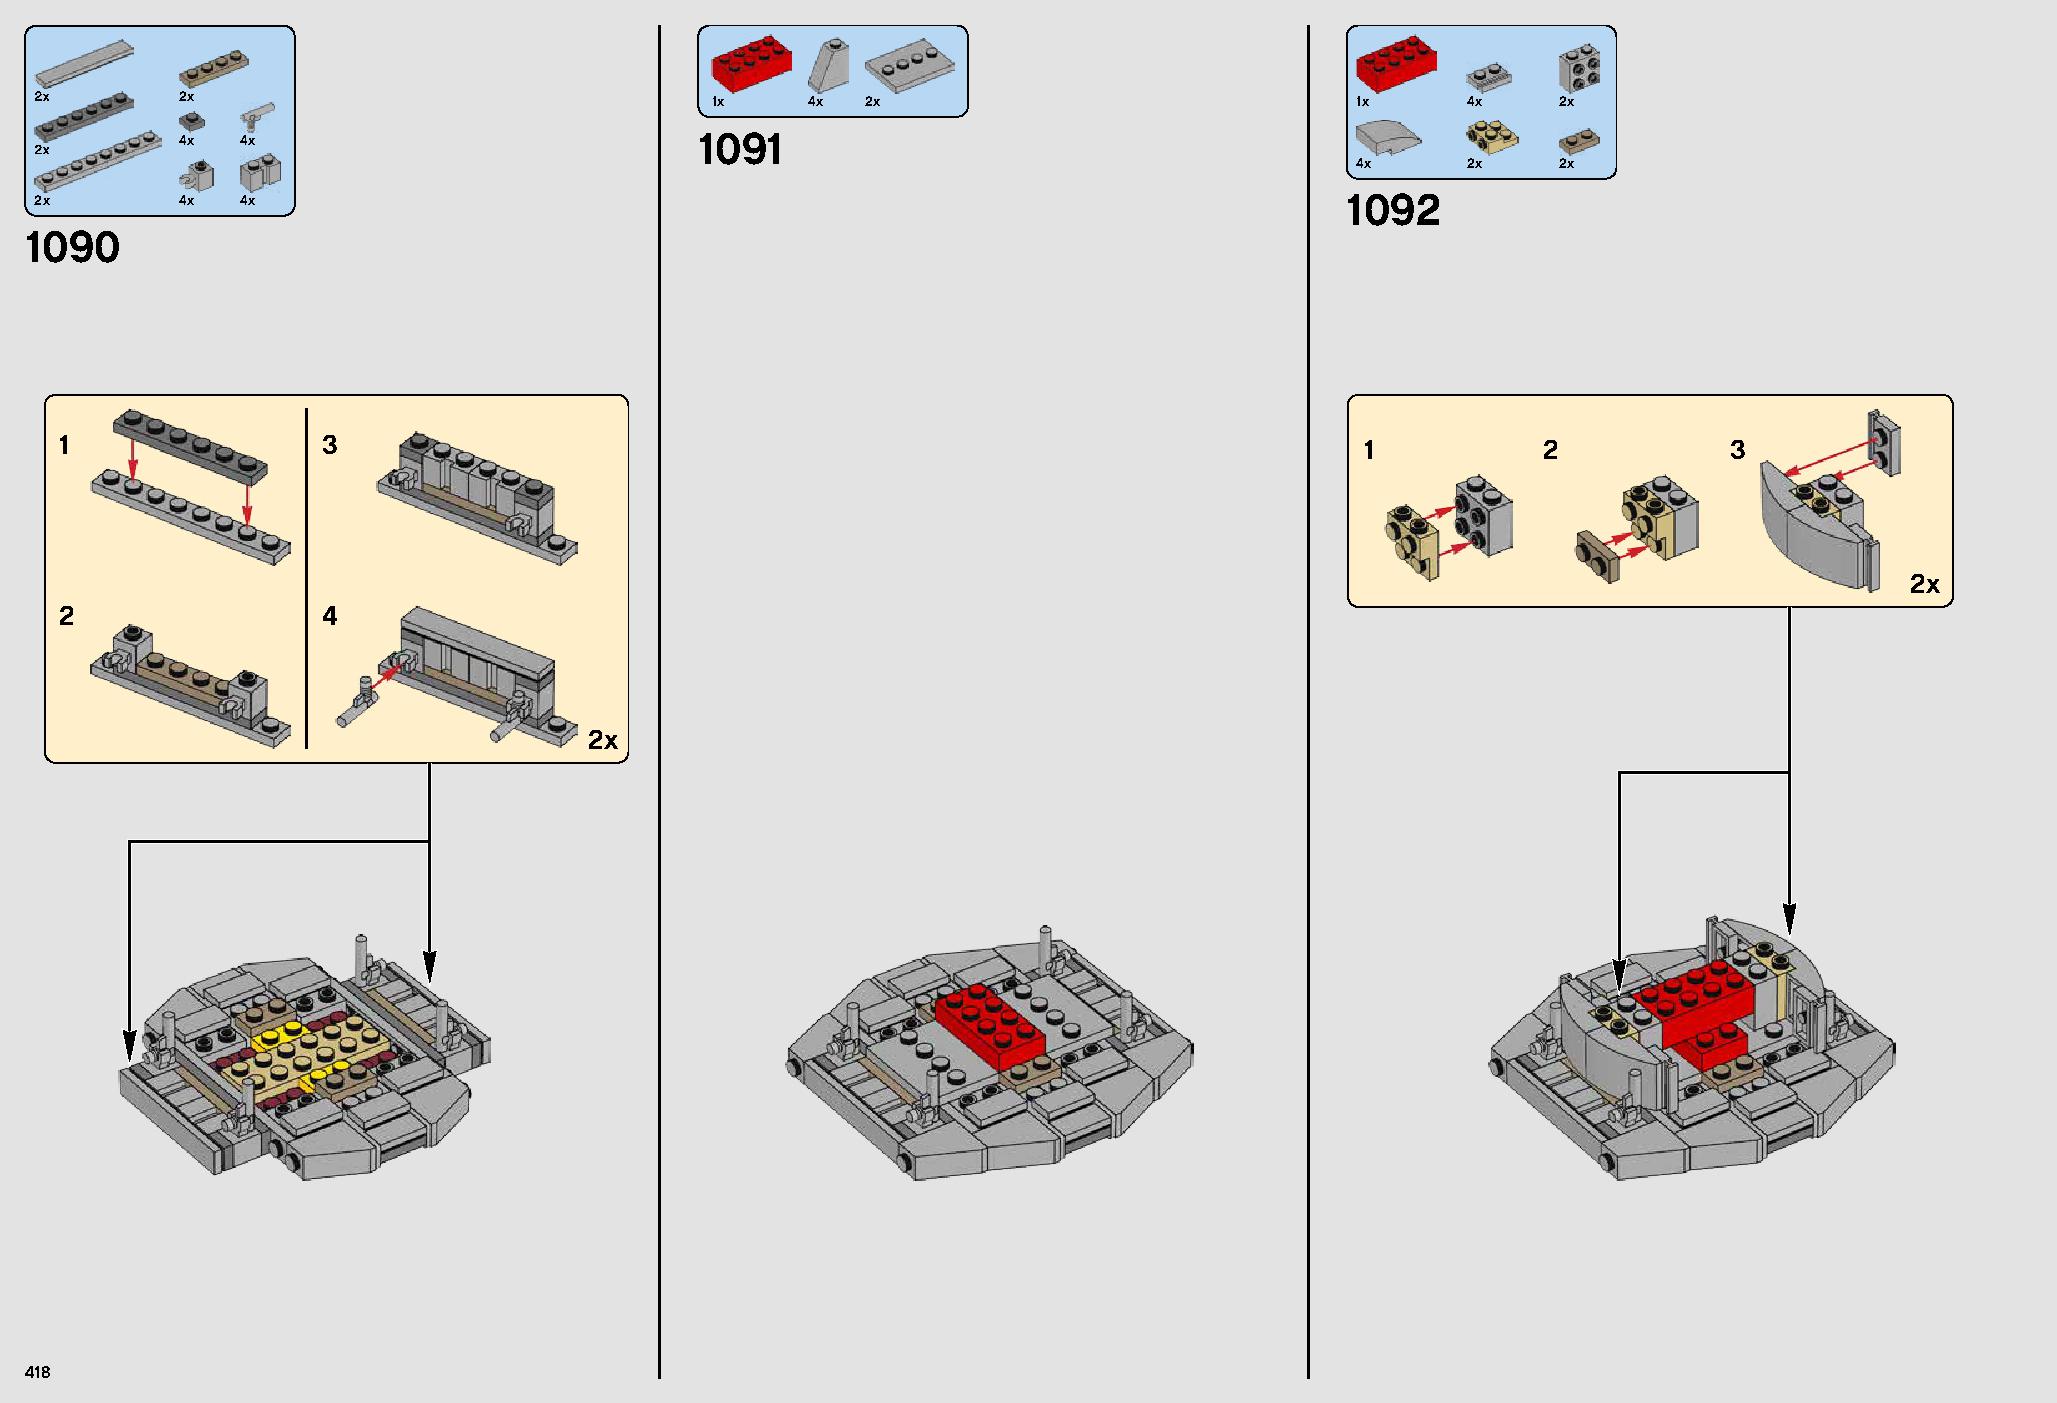 ミレニアム・ファルコン™ 75192 レゴの商品情報 レゴの説明書・組立方法 418 page